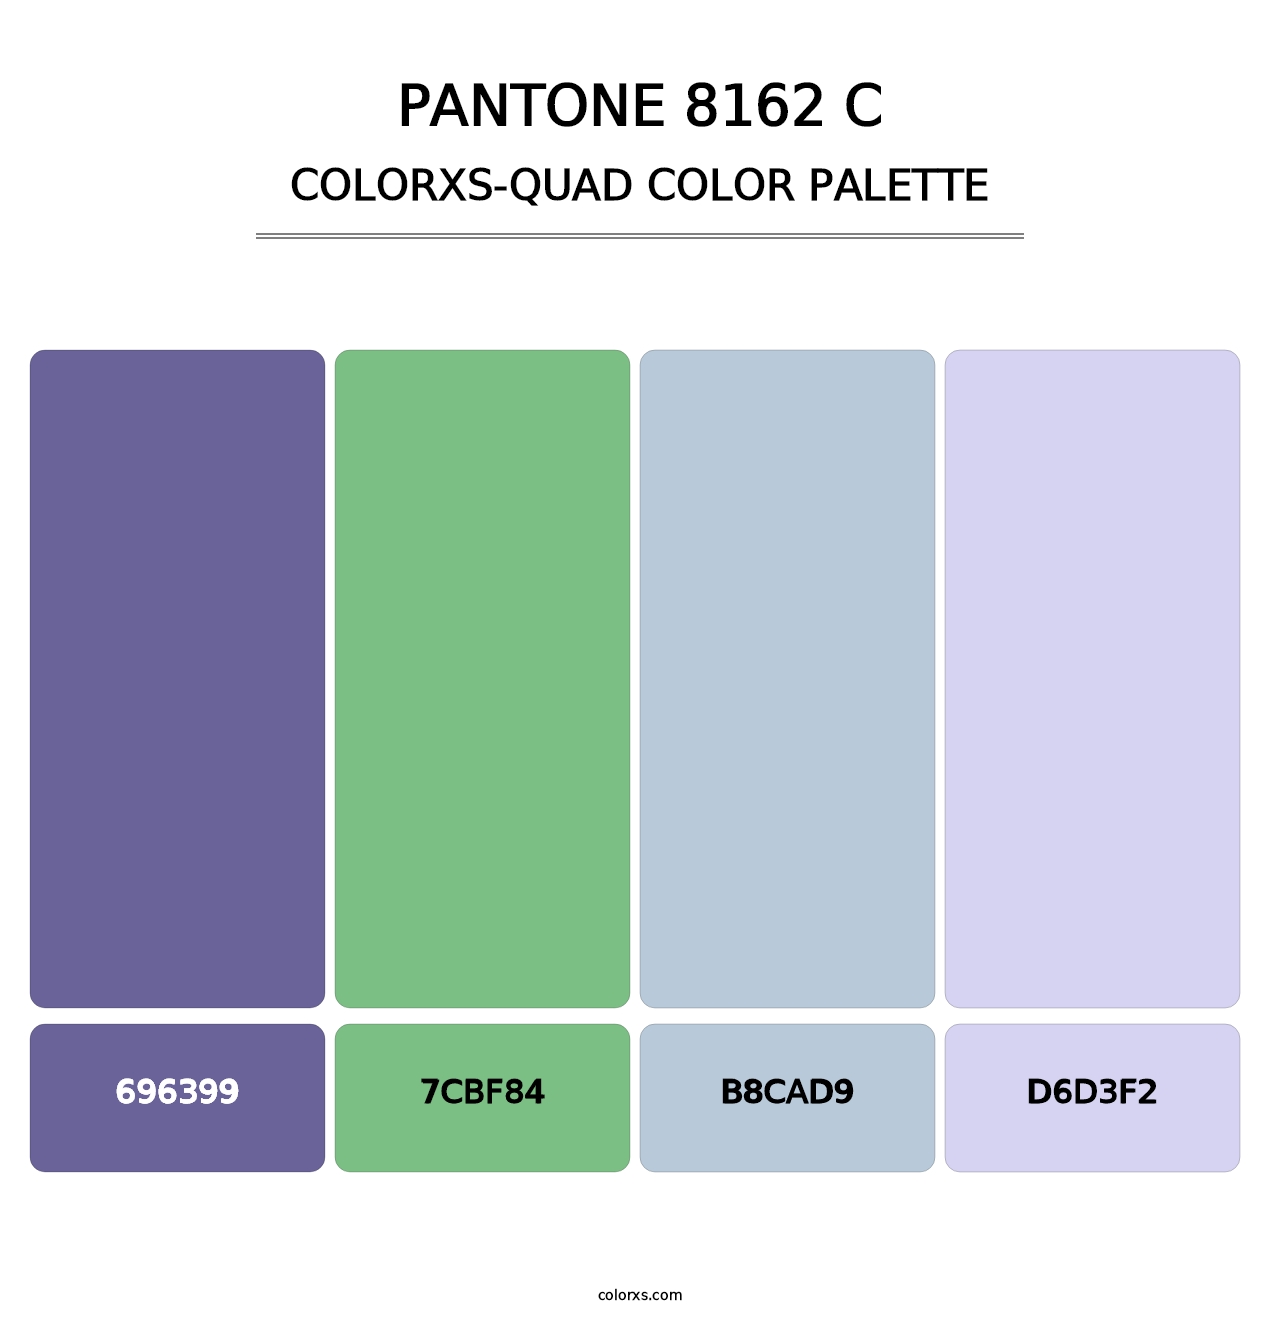 PANTONE 8162 C - Colorxs Quad Palette